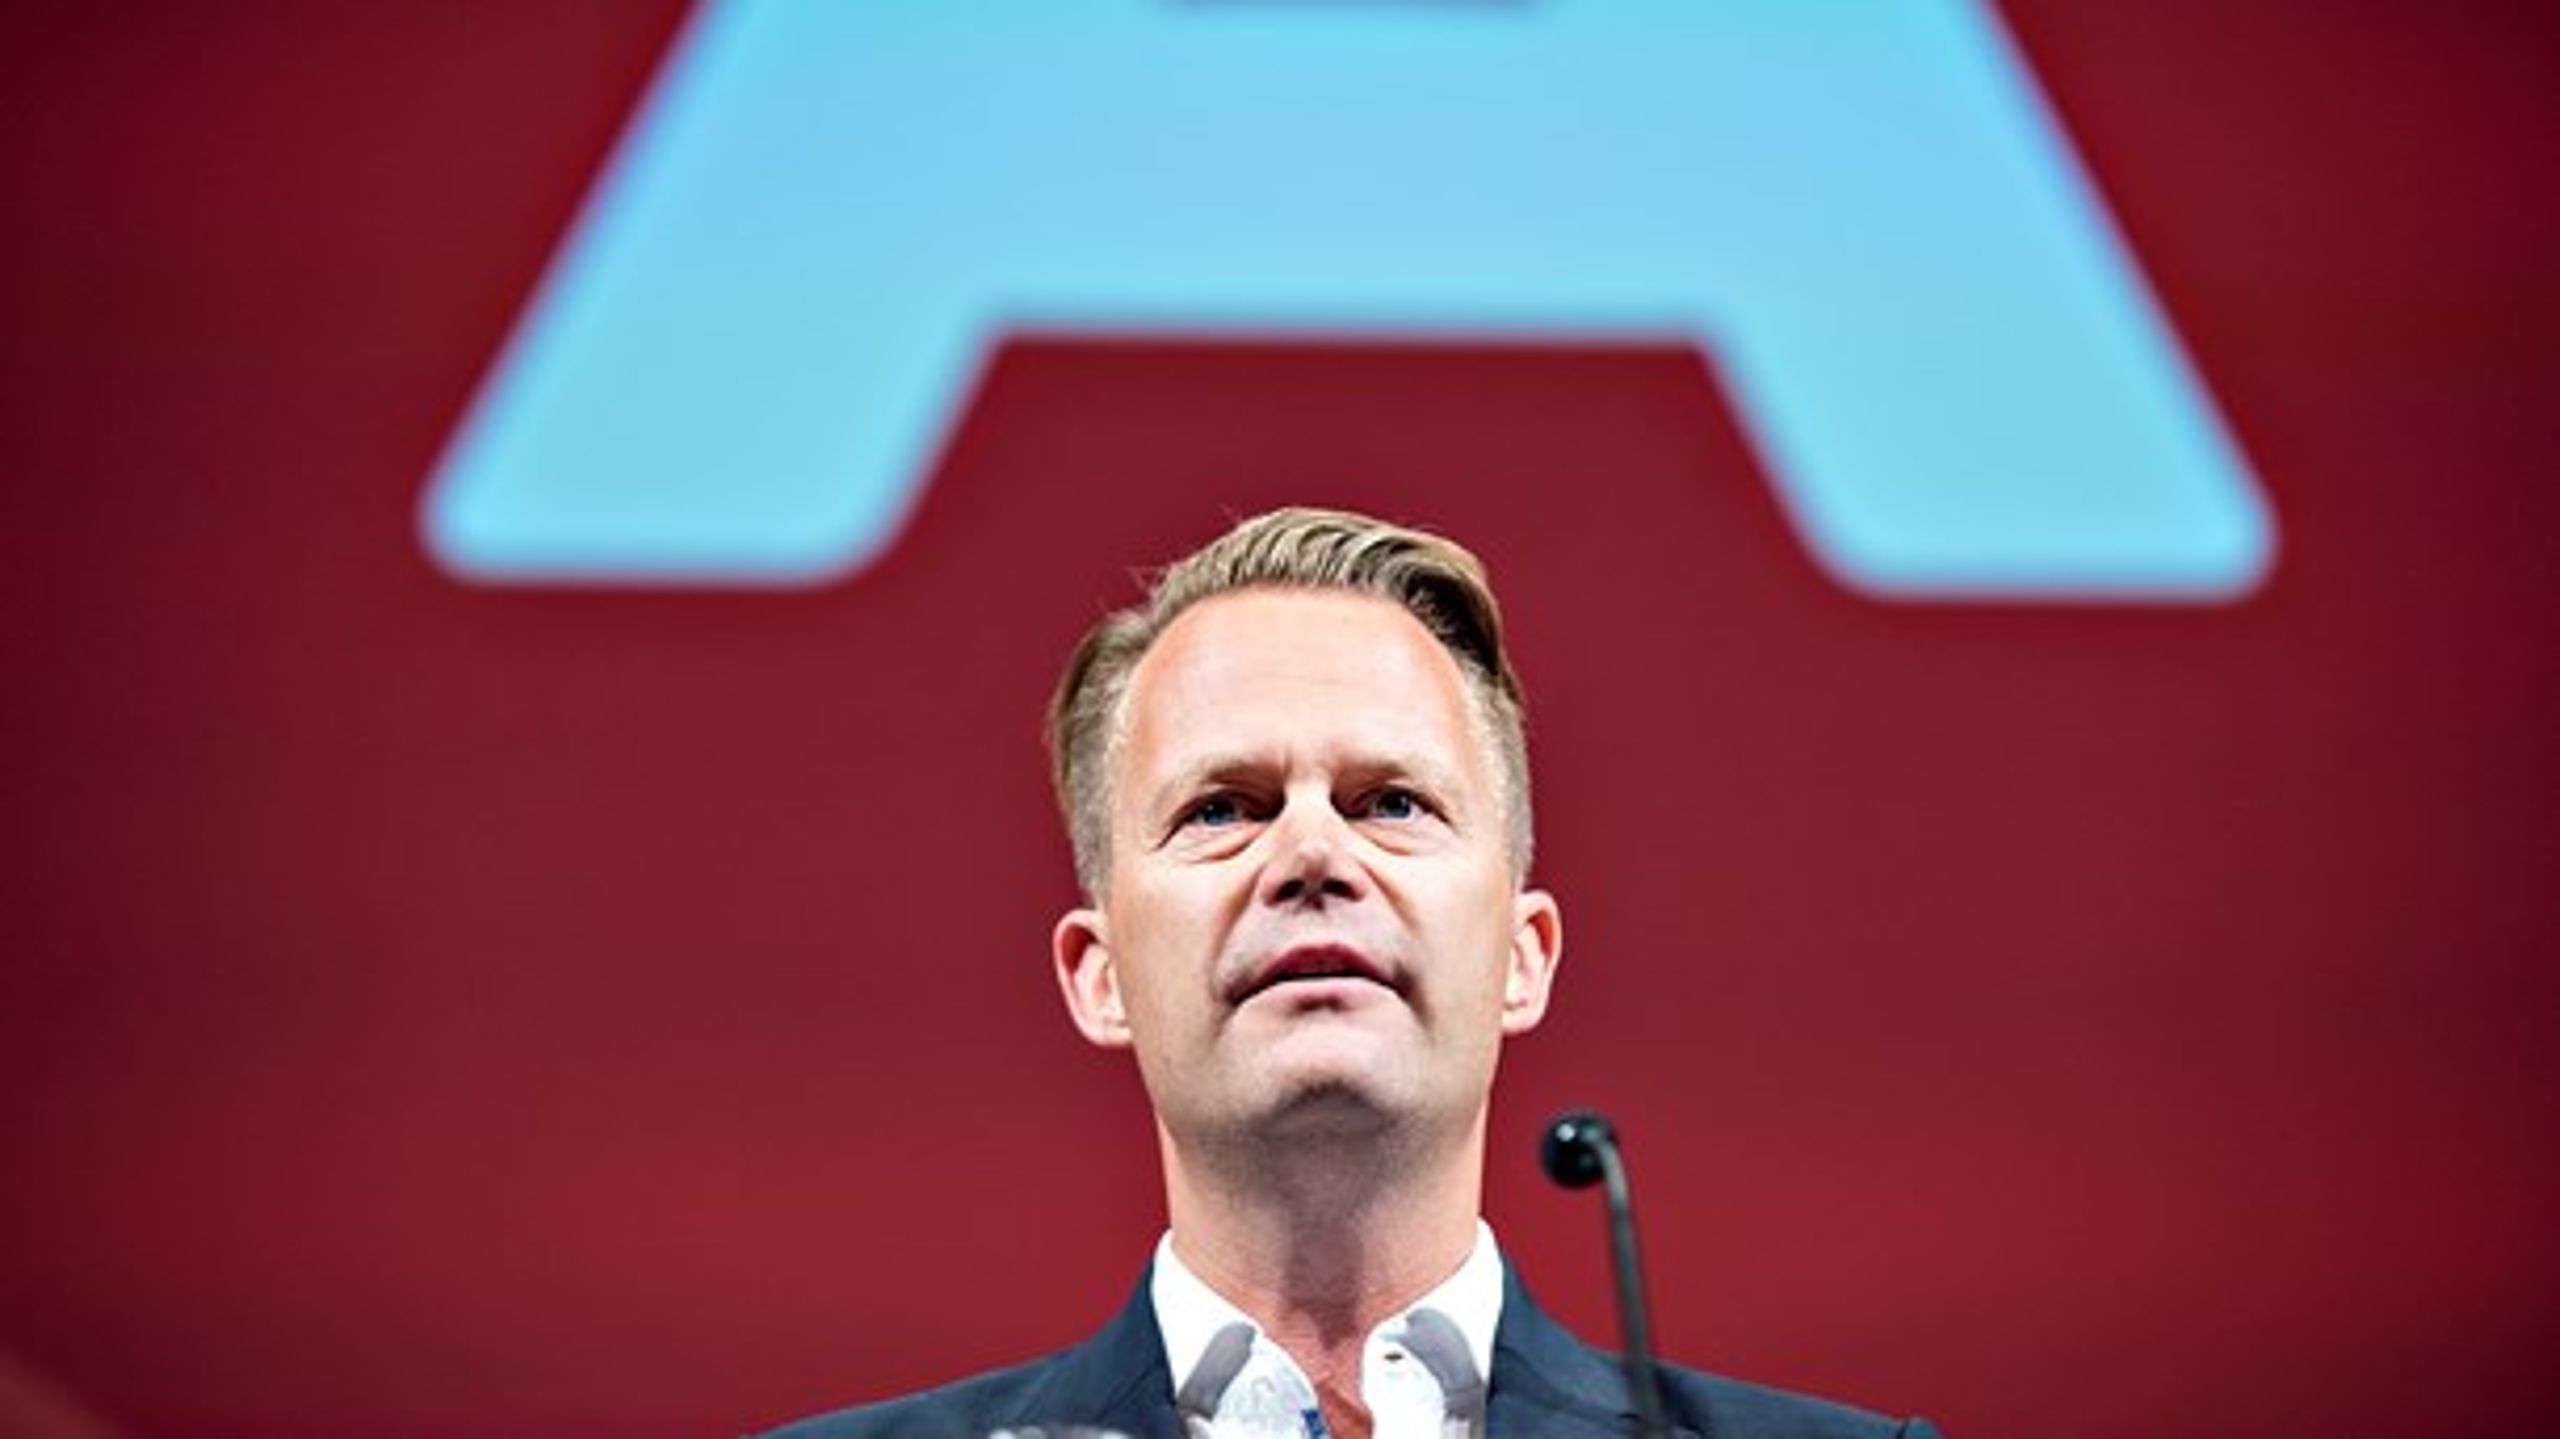 Udenrigsminister Jeppe Kofod (S) annoncerede i oktober 2019, at han vil stille op i Københavns Storkreds ved næste folketingsvalg.&nbsp;